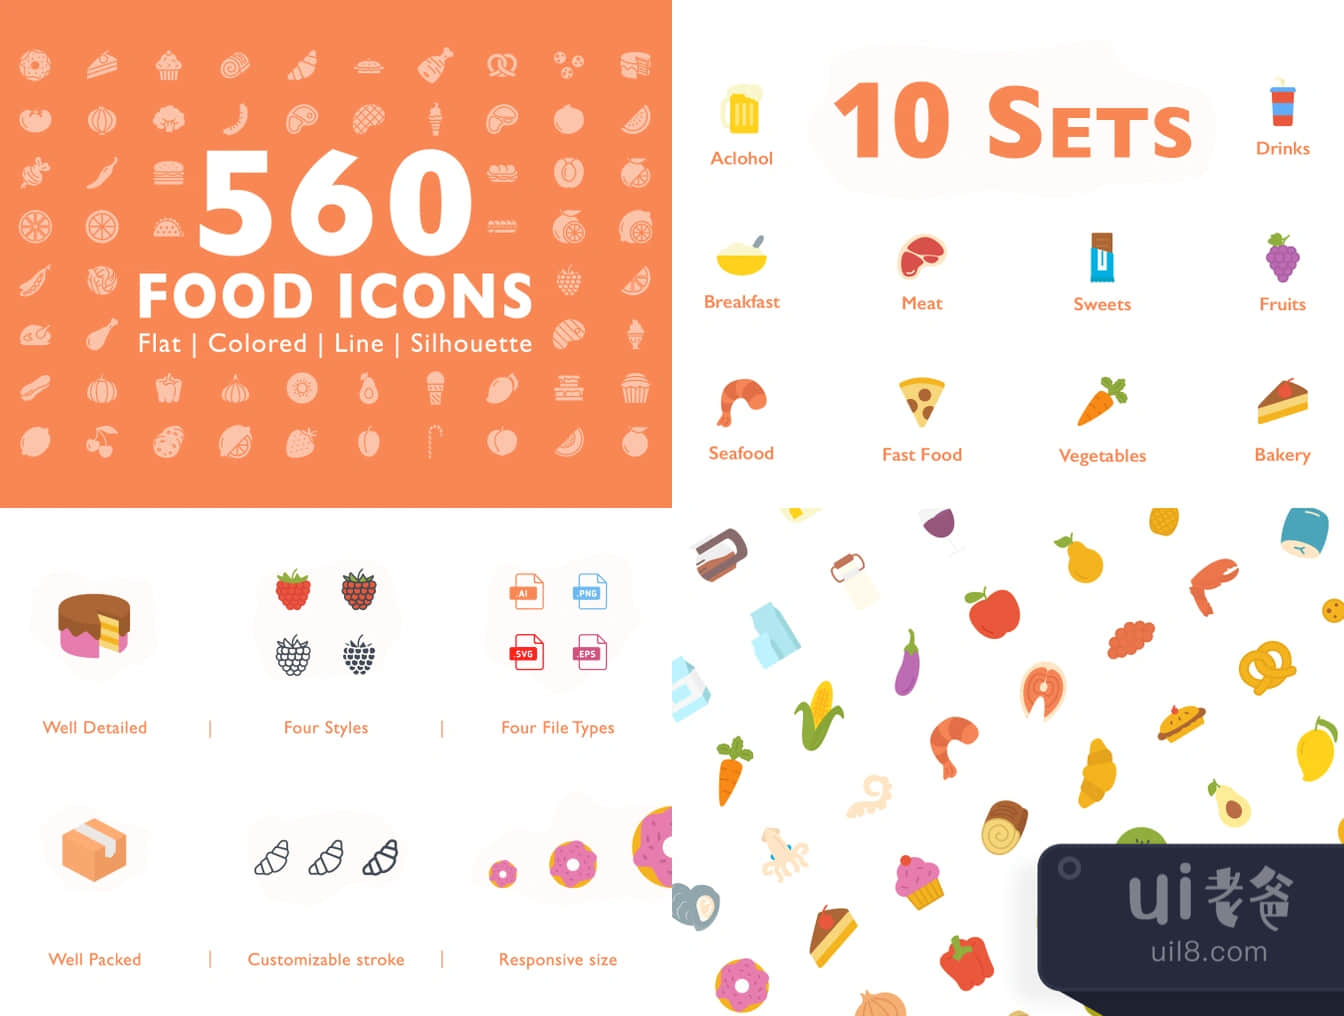 560个食品图标 (560 Food Icons)插图